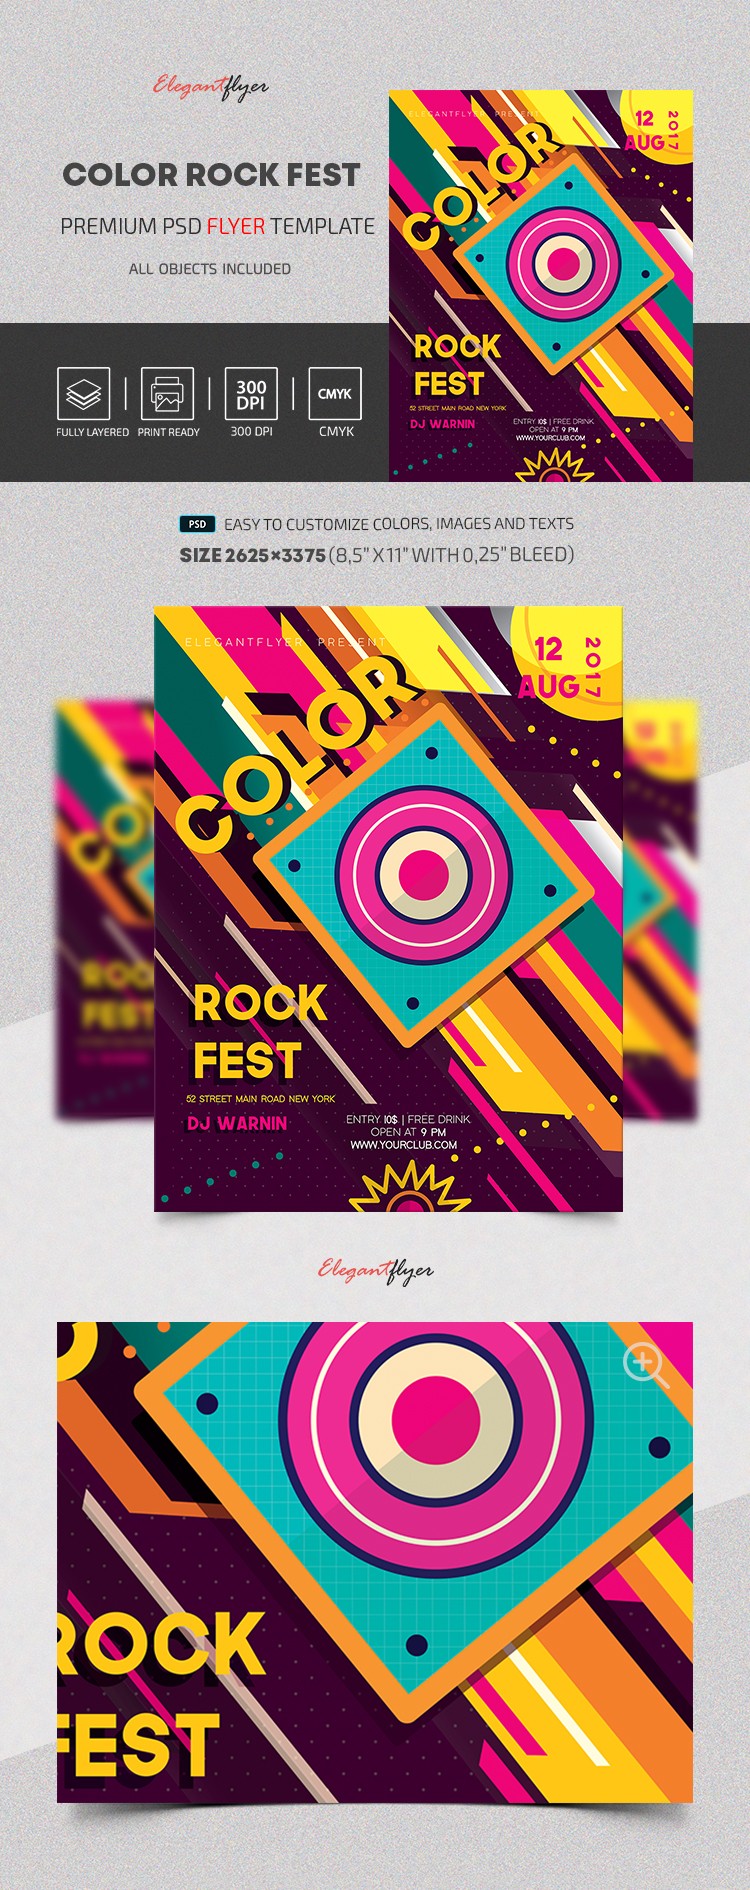 Сolor Rock Fest --> Festiwal Kolorowego Rocka by ElegantFlyer